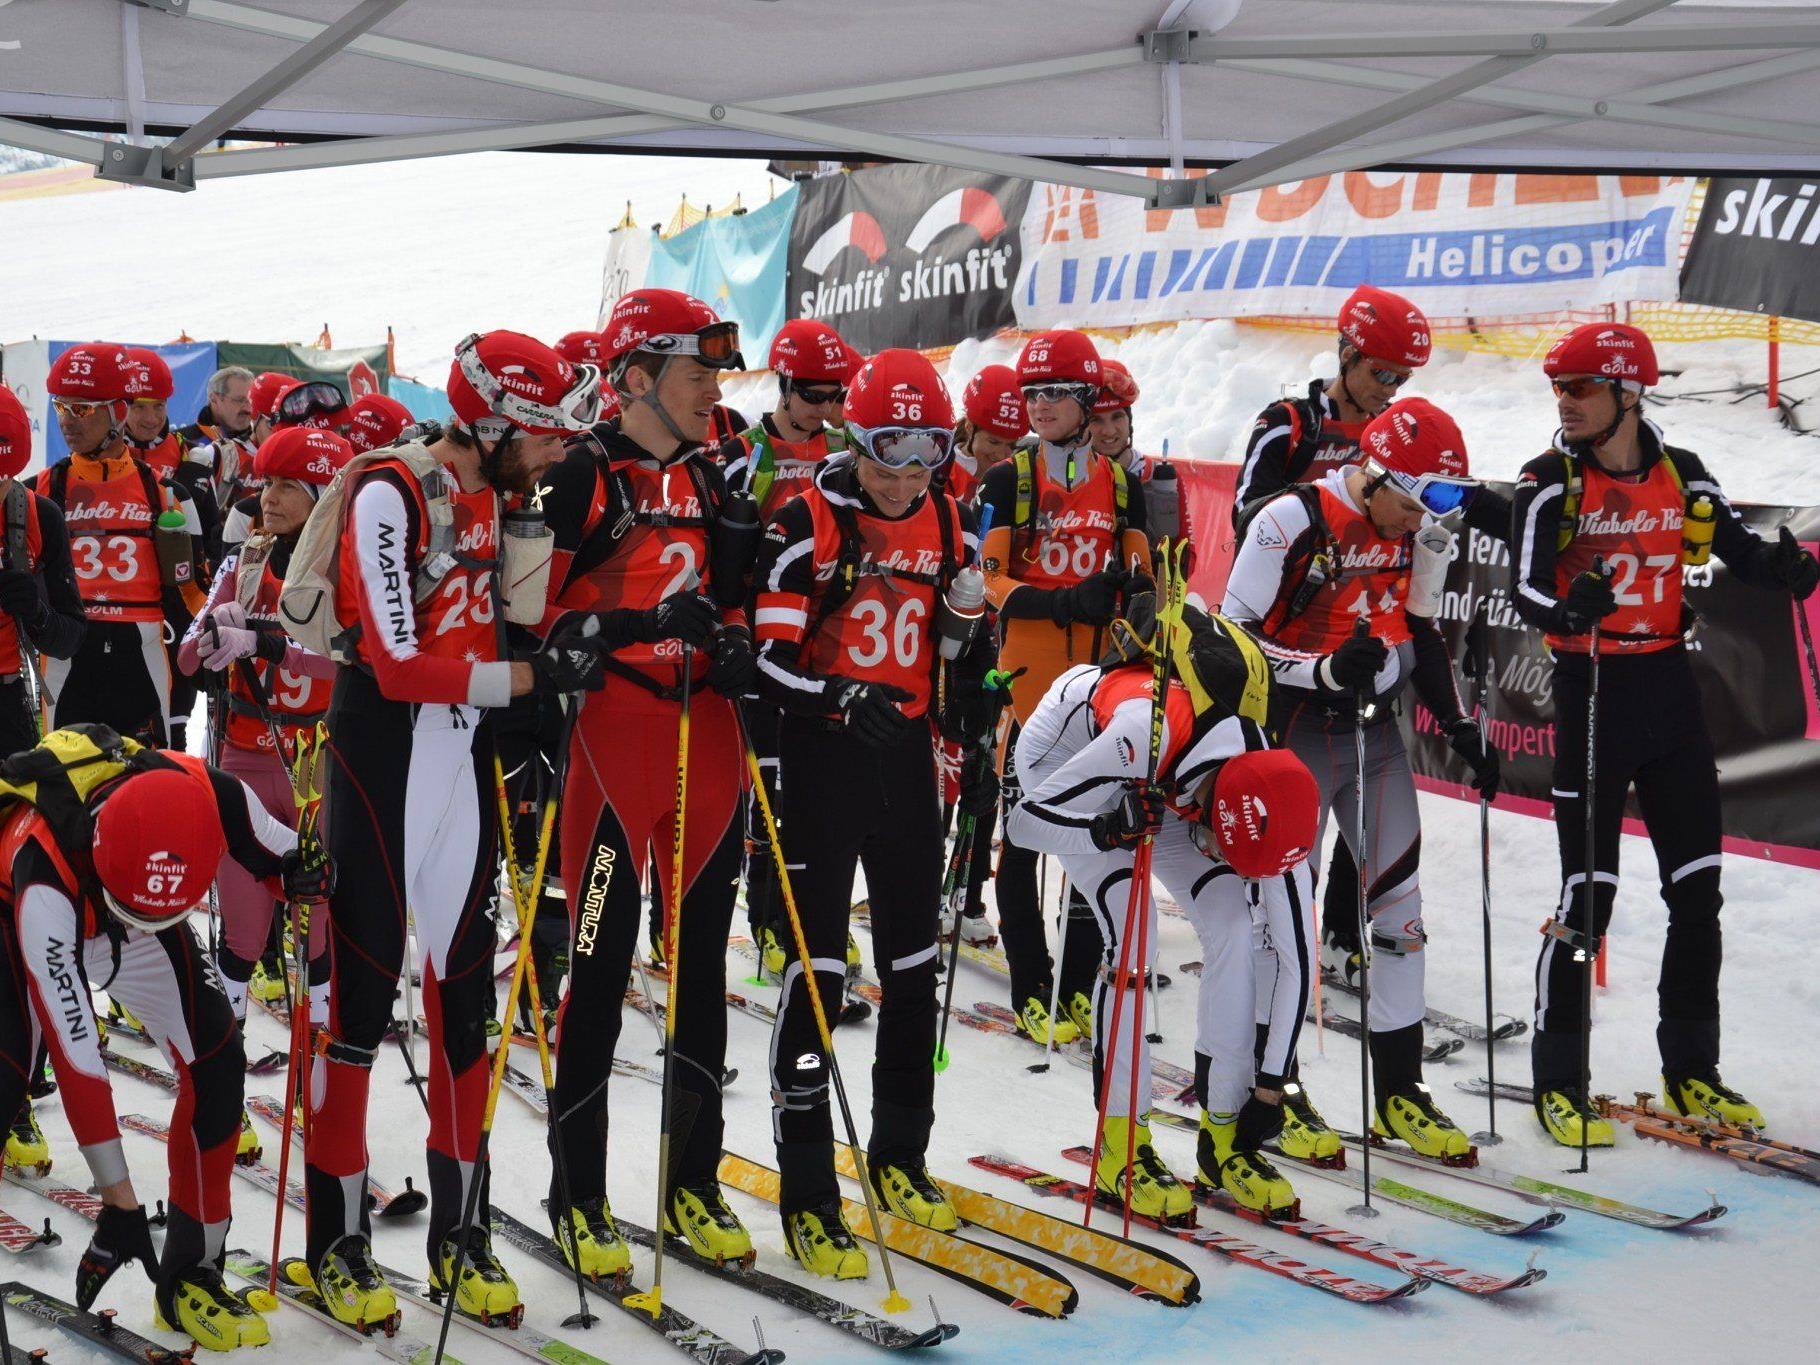 Ein spannendes Diabolo Race ging am Wochenende am Golm über die Bühne - der Klassiker im Skitourenkalender